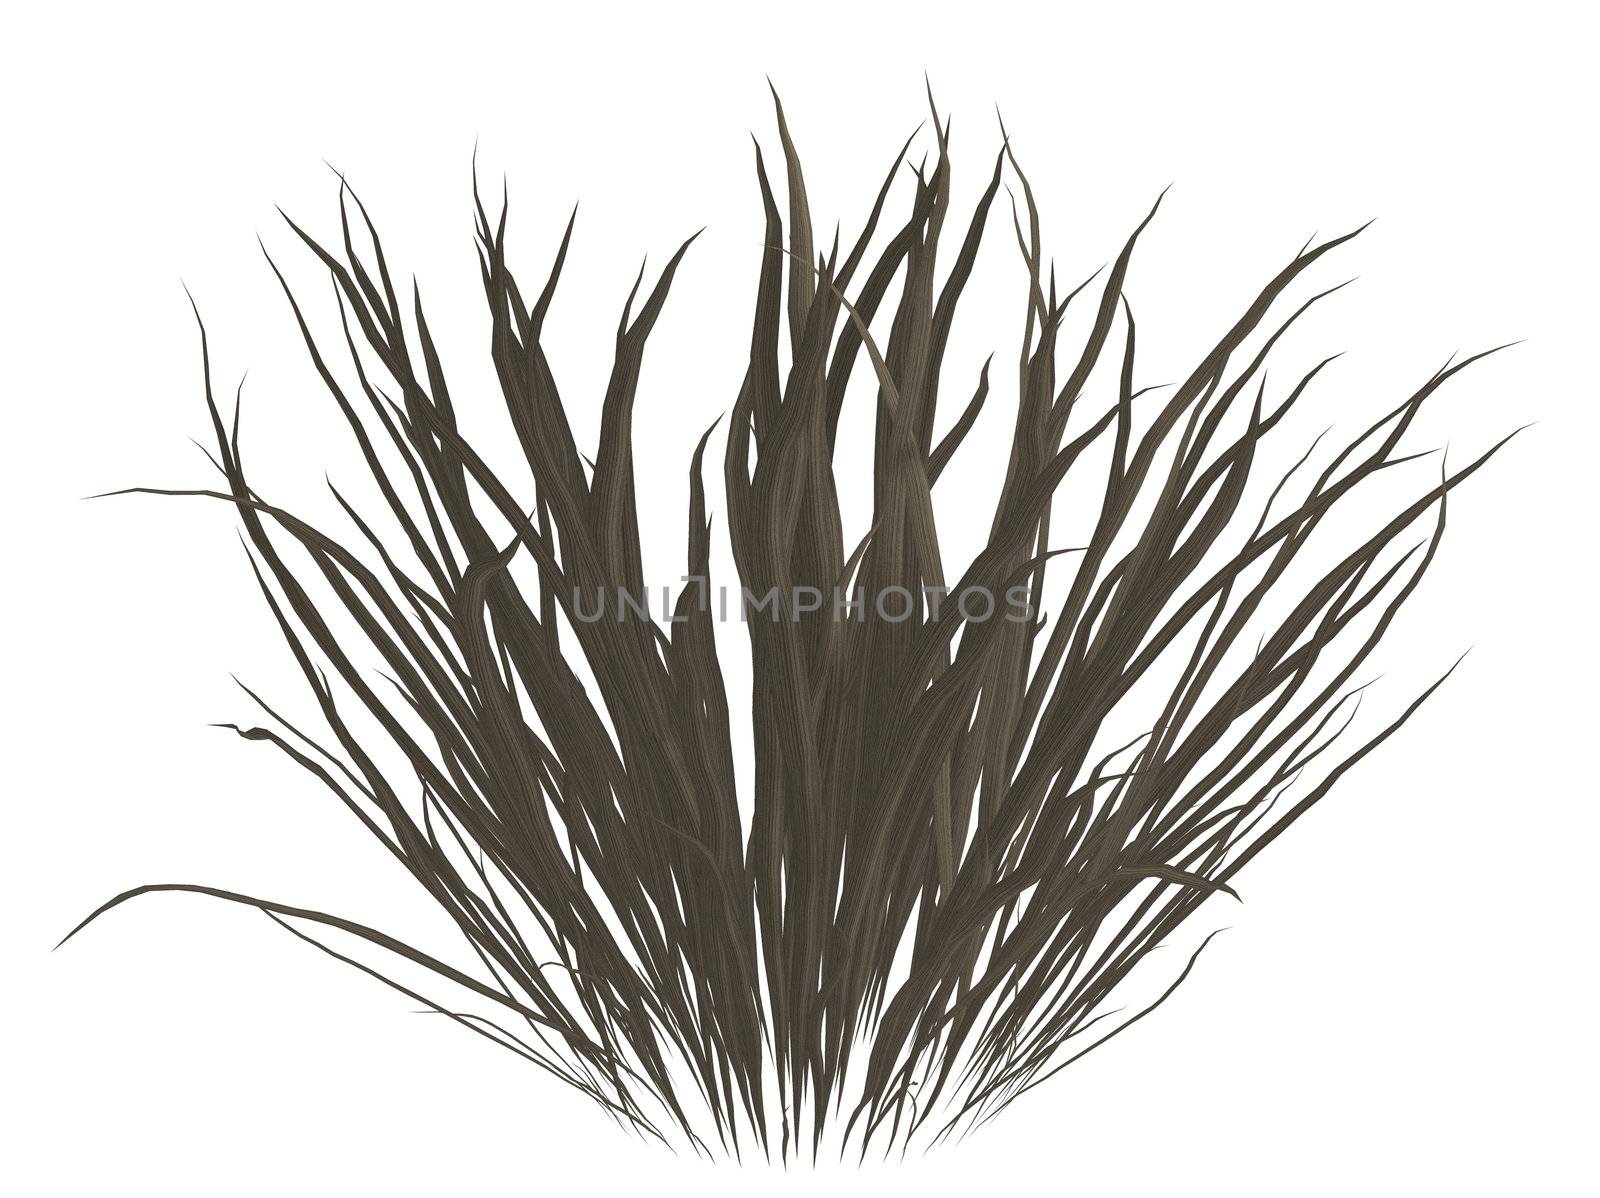 Dark grey dead grass on a white background